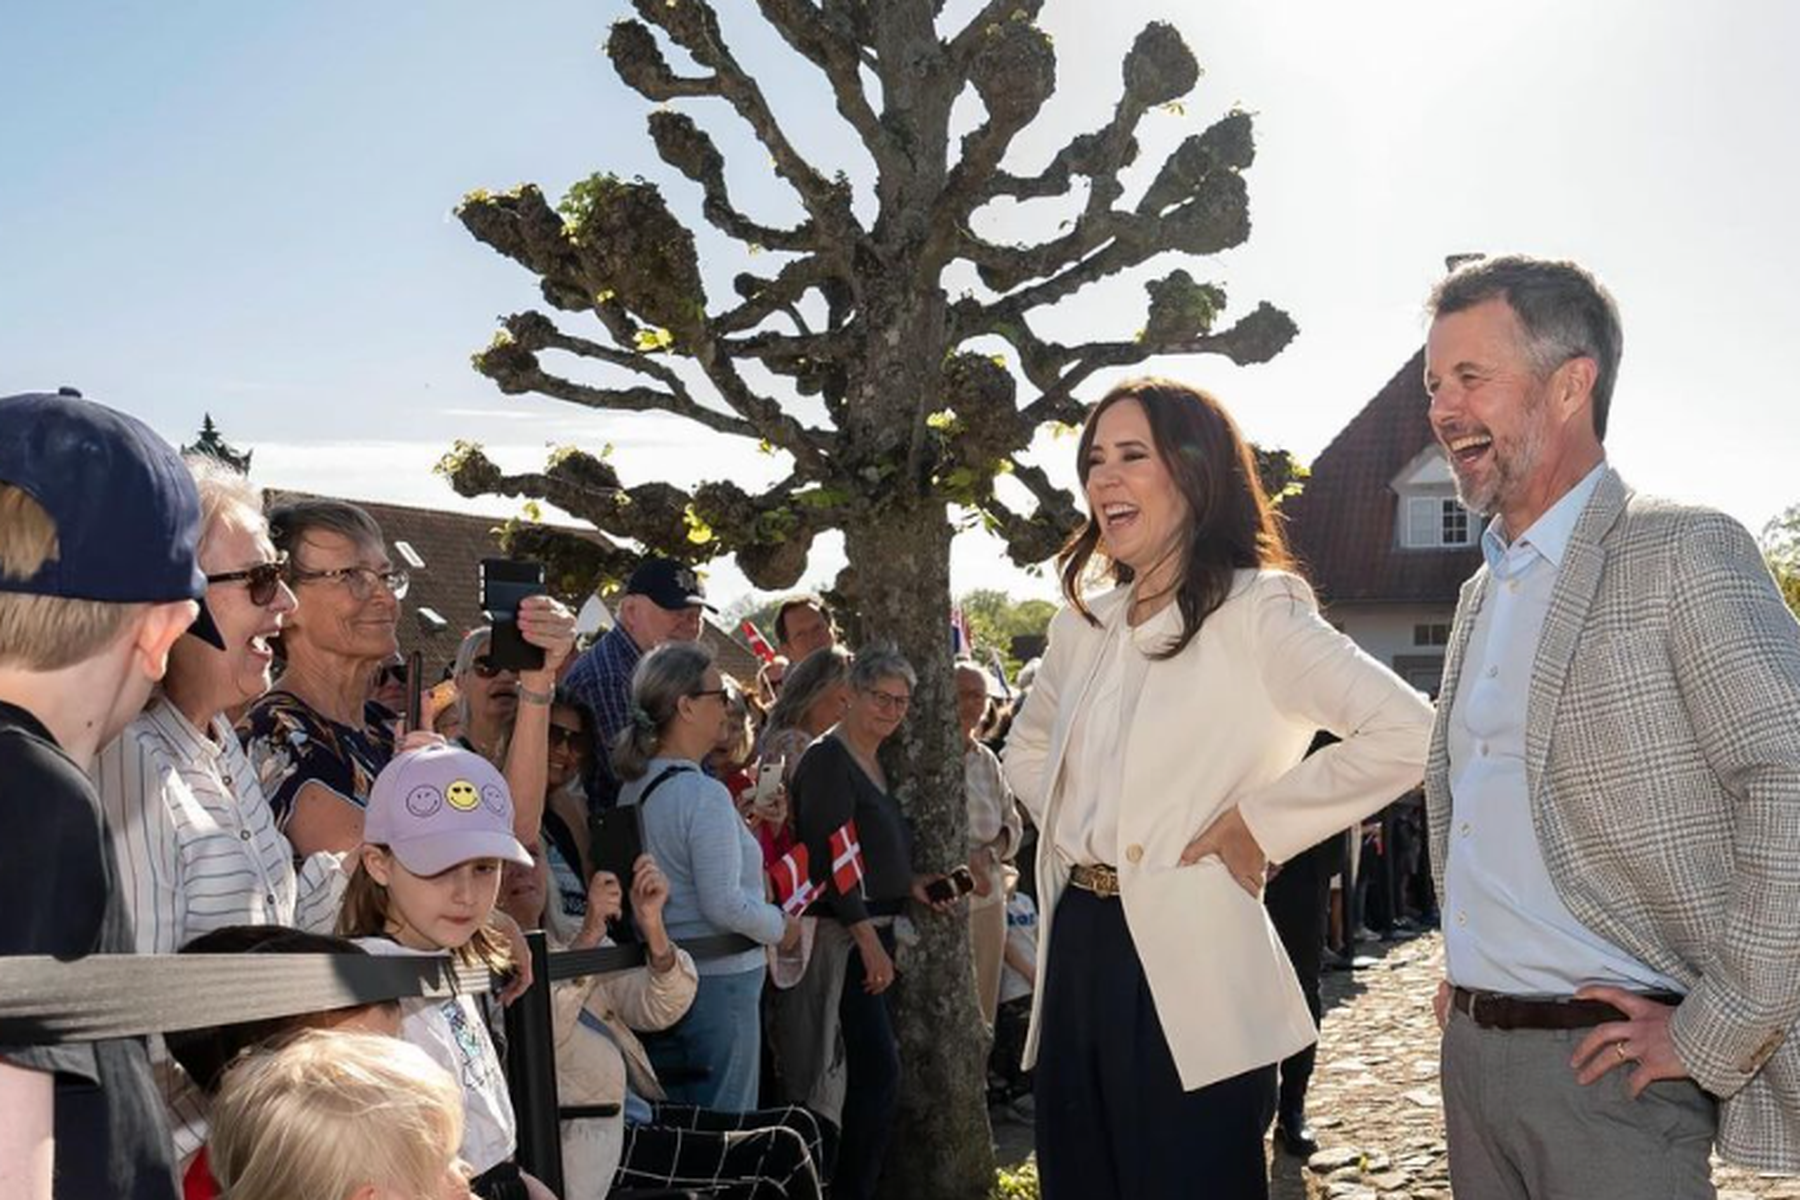 dänische royals: warum könig frederik und königin mary nicht mehr in kopenhagen wohnen